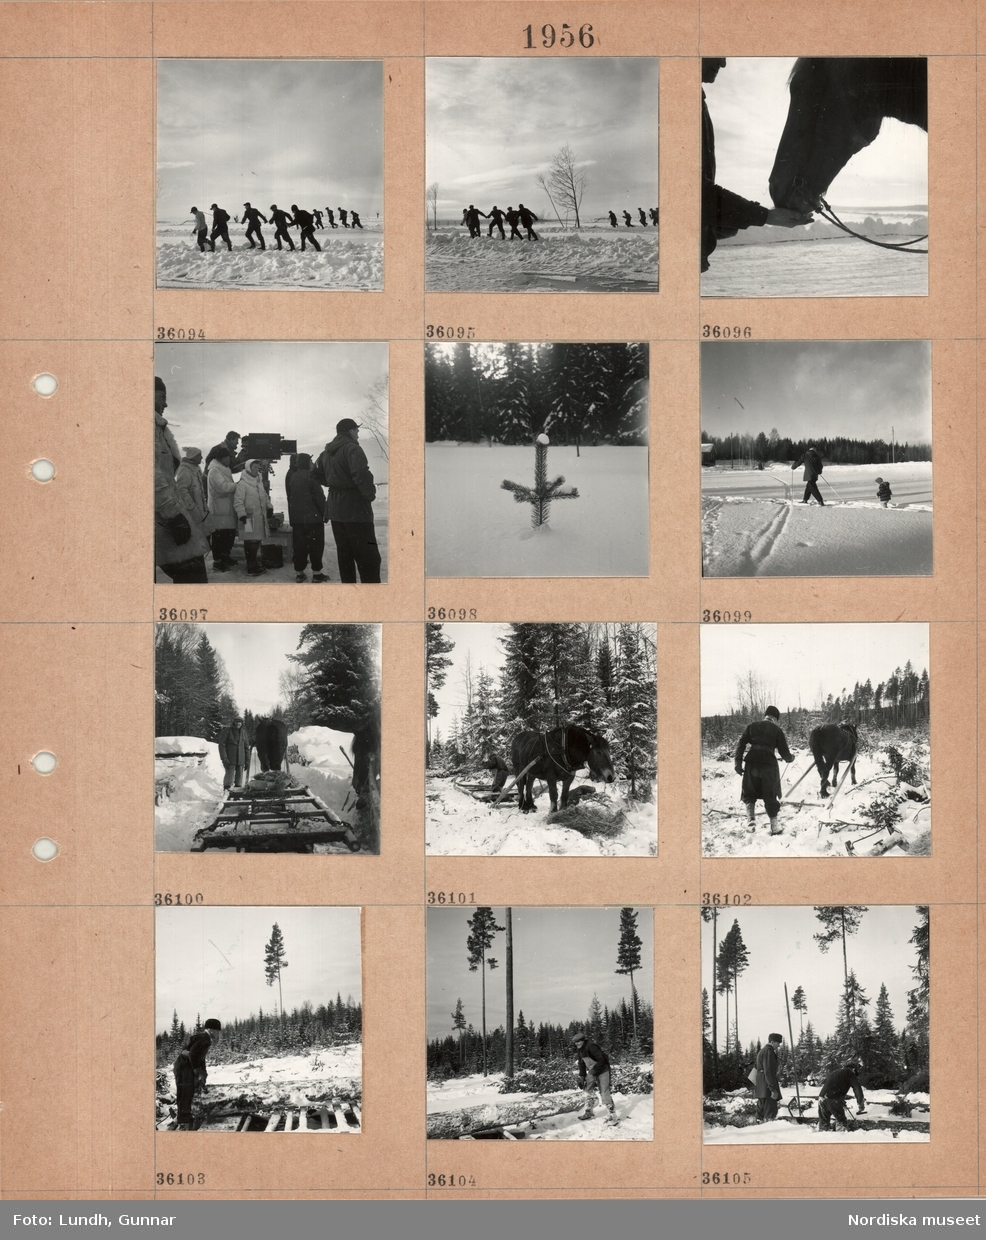 Motiv: (ingen anteckning) ;
En grupp män drar i rep, en man matar en häst, kvinnor och män står vid en filmkamera vid en filminspelning, en granplanta i snön, en vuxen och ett barn åker skidor i ett snötäckt landskap, en man kör en hästdragen släde i en snötäckt skog, en man lastar en timmerstock på en släde.